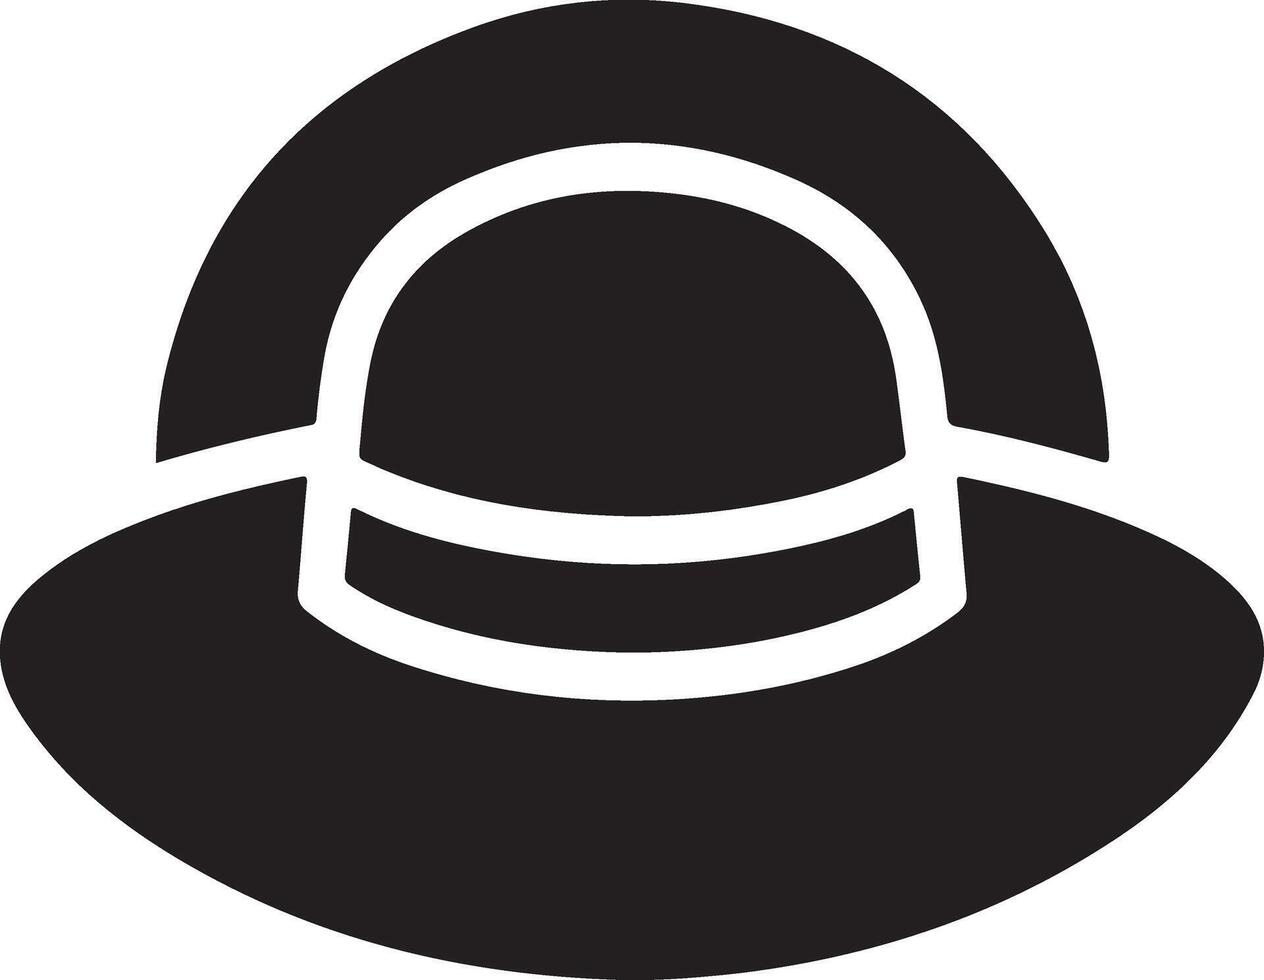 minimal Retro Hat icon, clipart, symbol, black color silhouette 20 vector